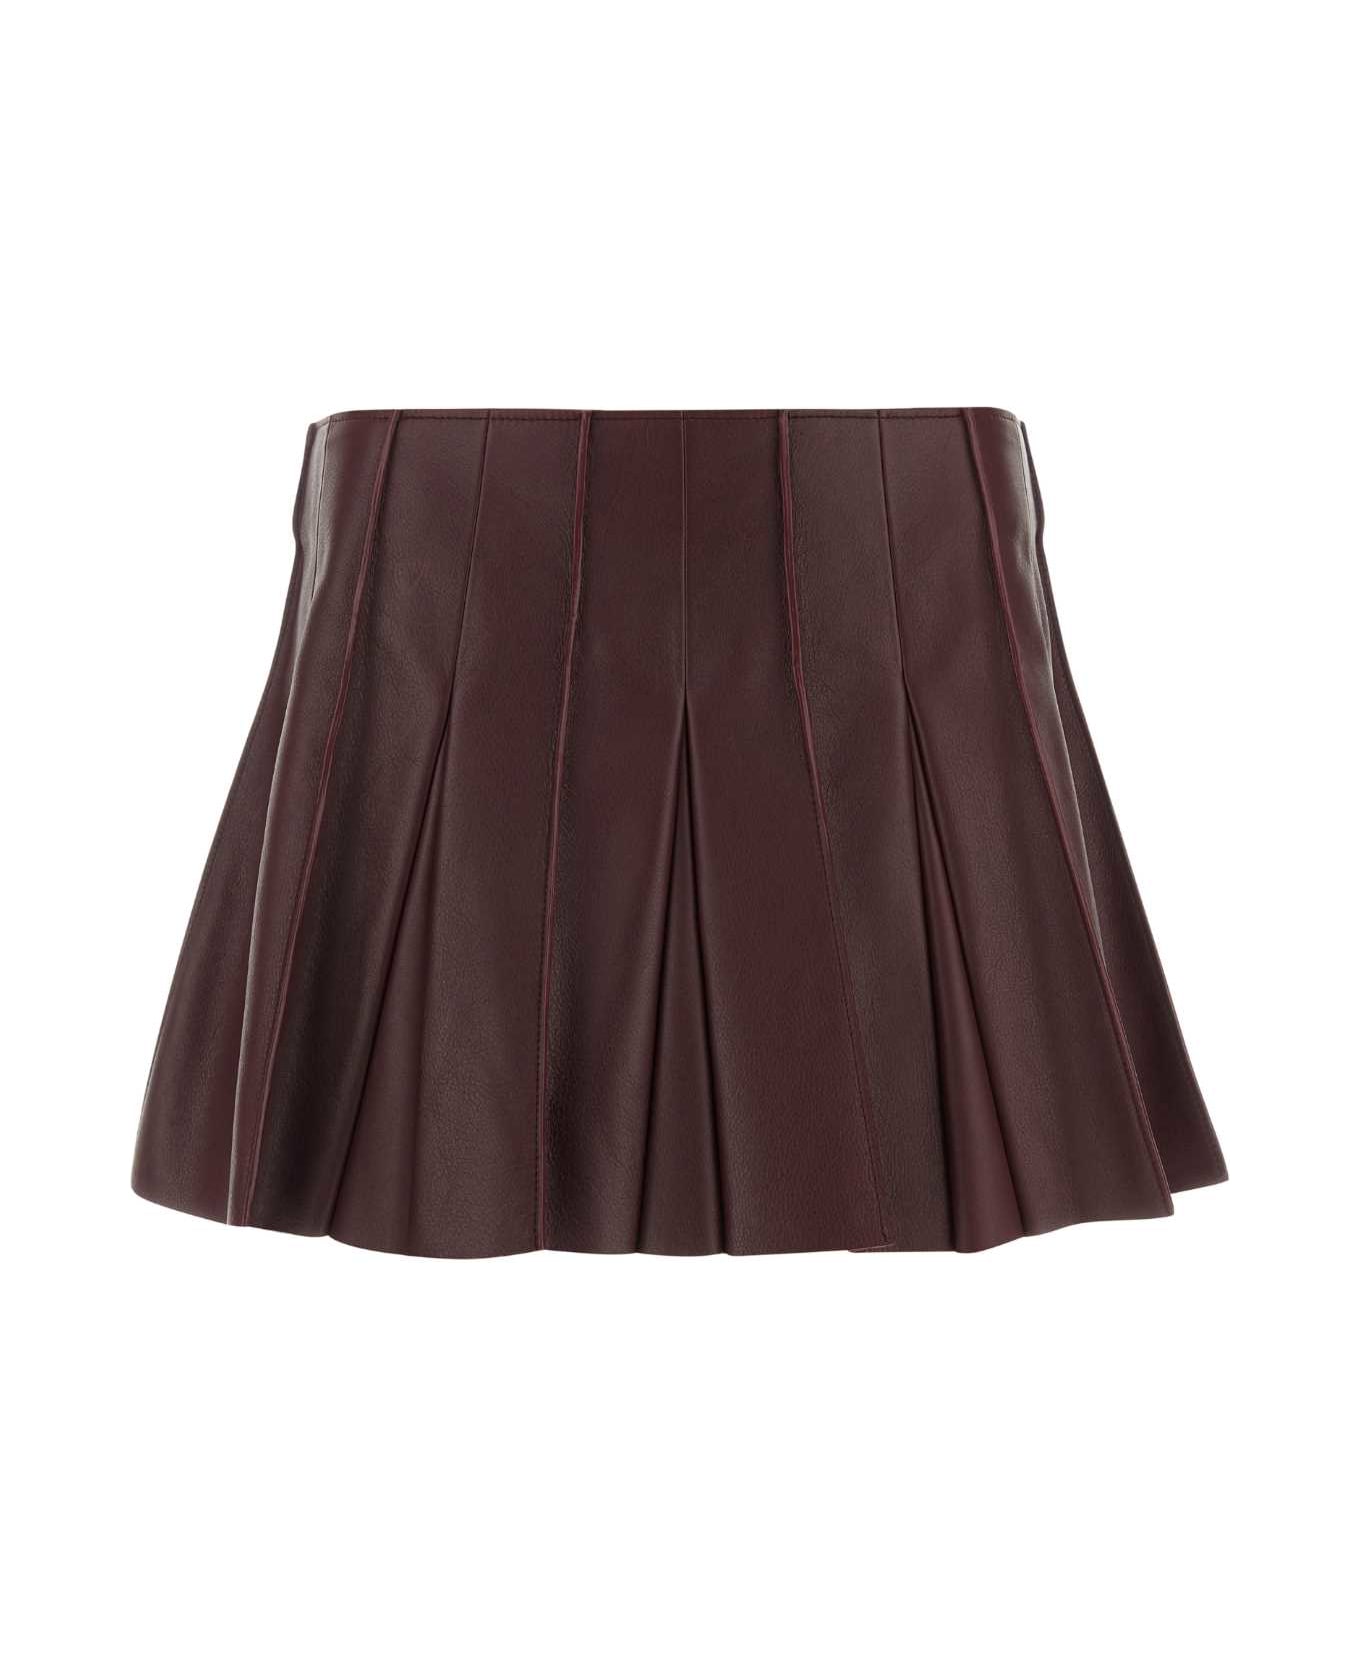 Bottega Veneta Burgundy Leather Mini Skirt - MERLOT スカート